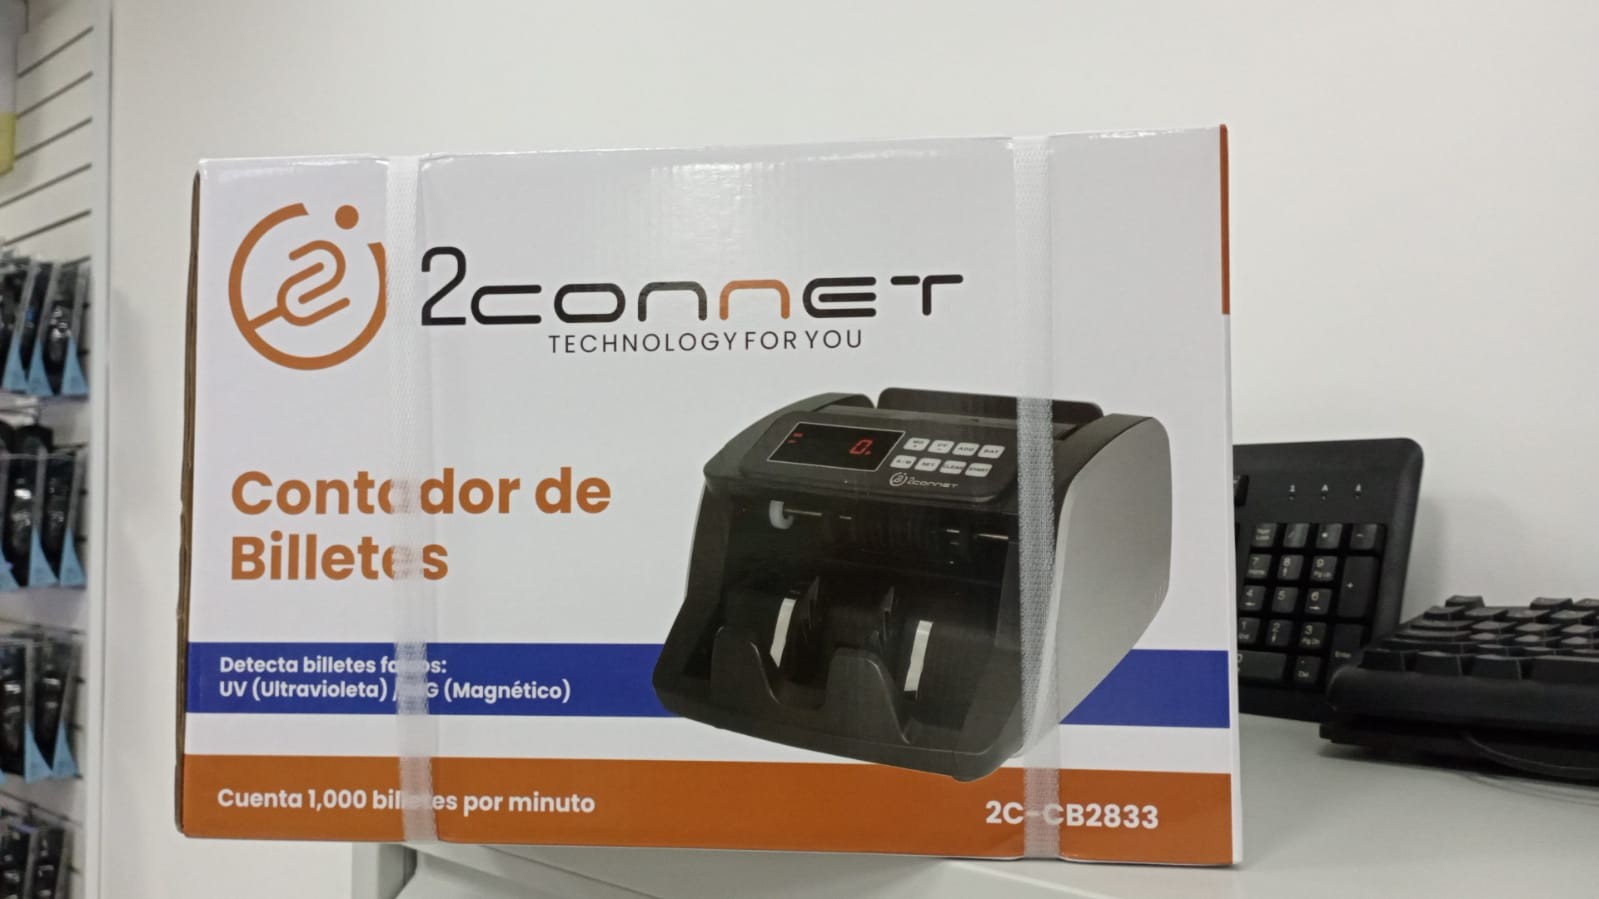 impresoras y scanners - Contadora de Dinero/Billetes Mod. 2C-CD2833 0